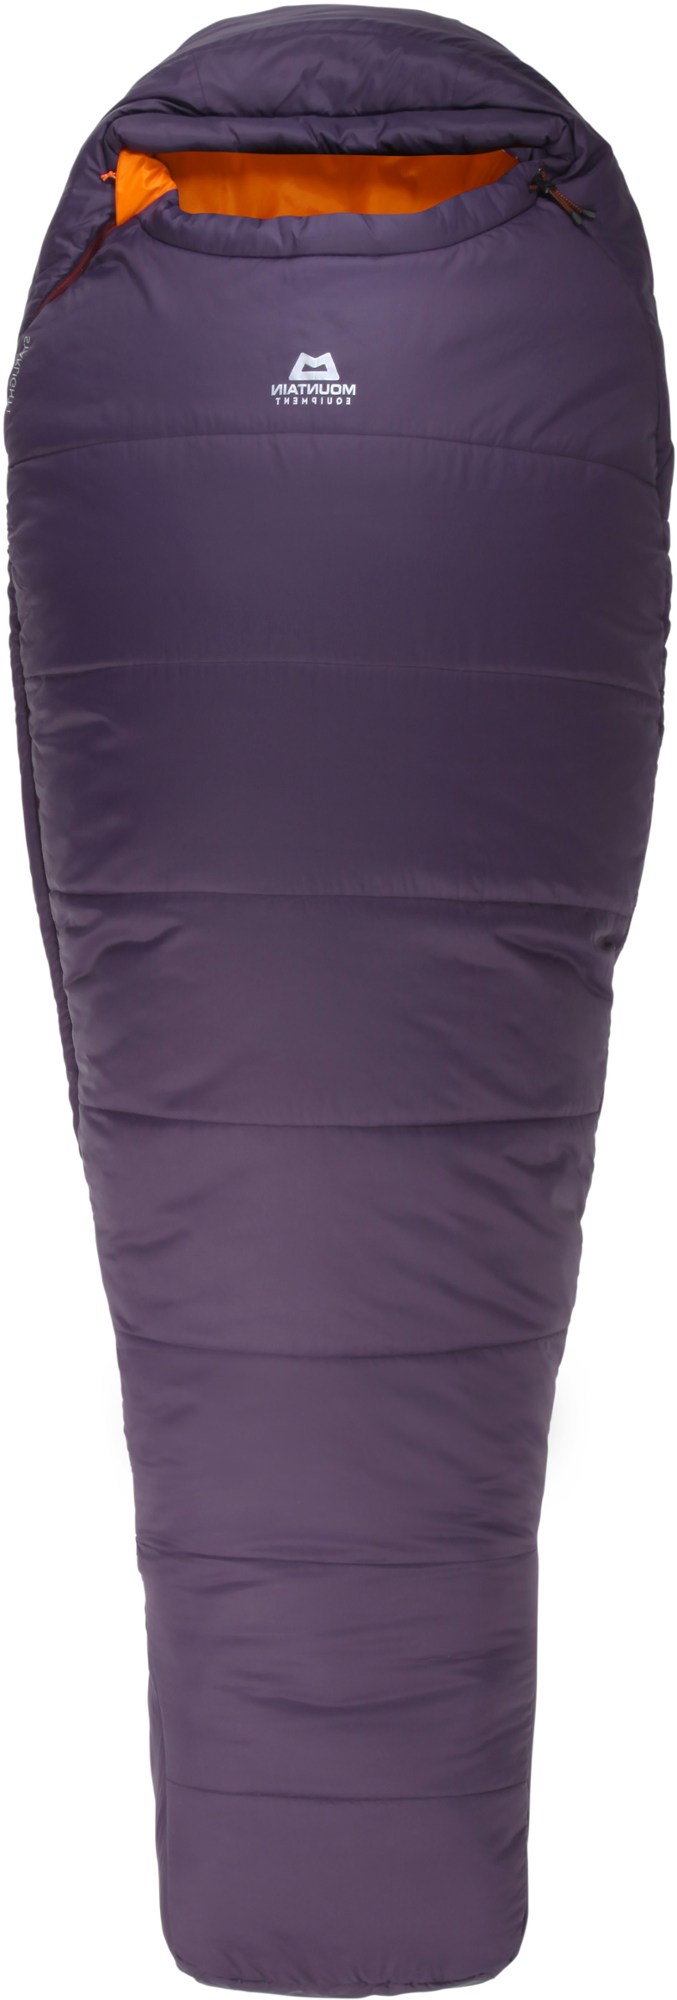 Спальный мешок Starlight I - женский длинный Mountain Equipment, фиолетовый цена и фото